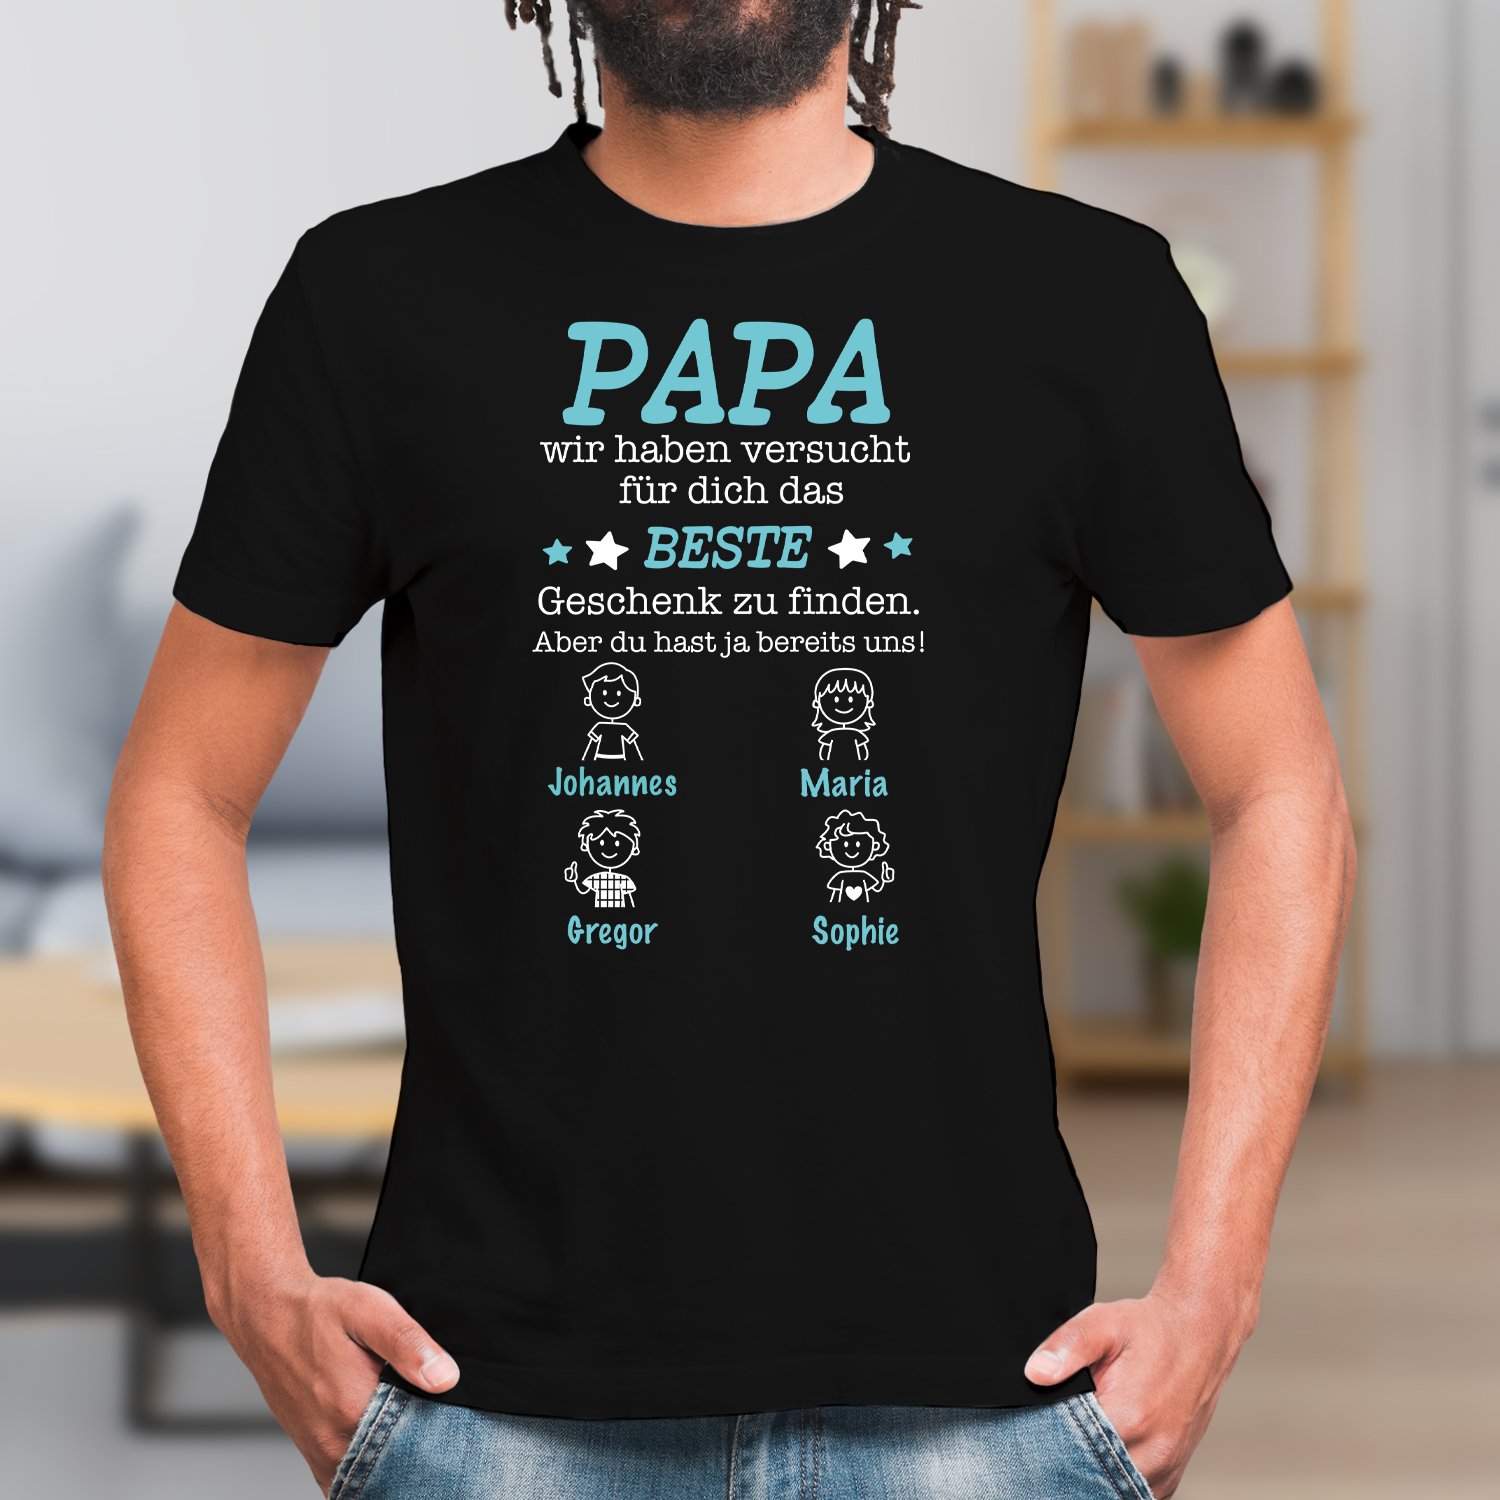 Wonderbaarlijk Rauw Een centrale tool die een belangrijke rol speelt T-Shirt - Das beste Geschenk für Papa